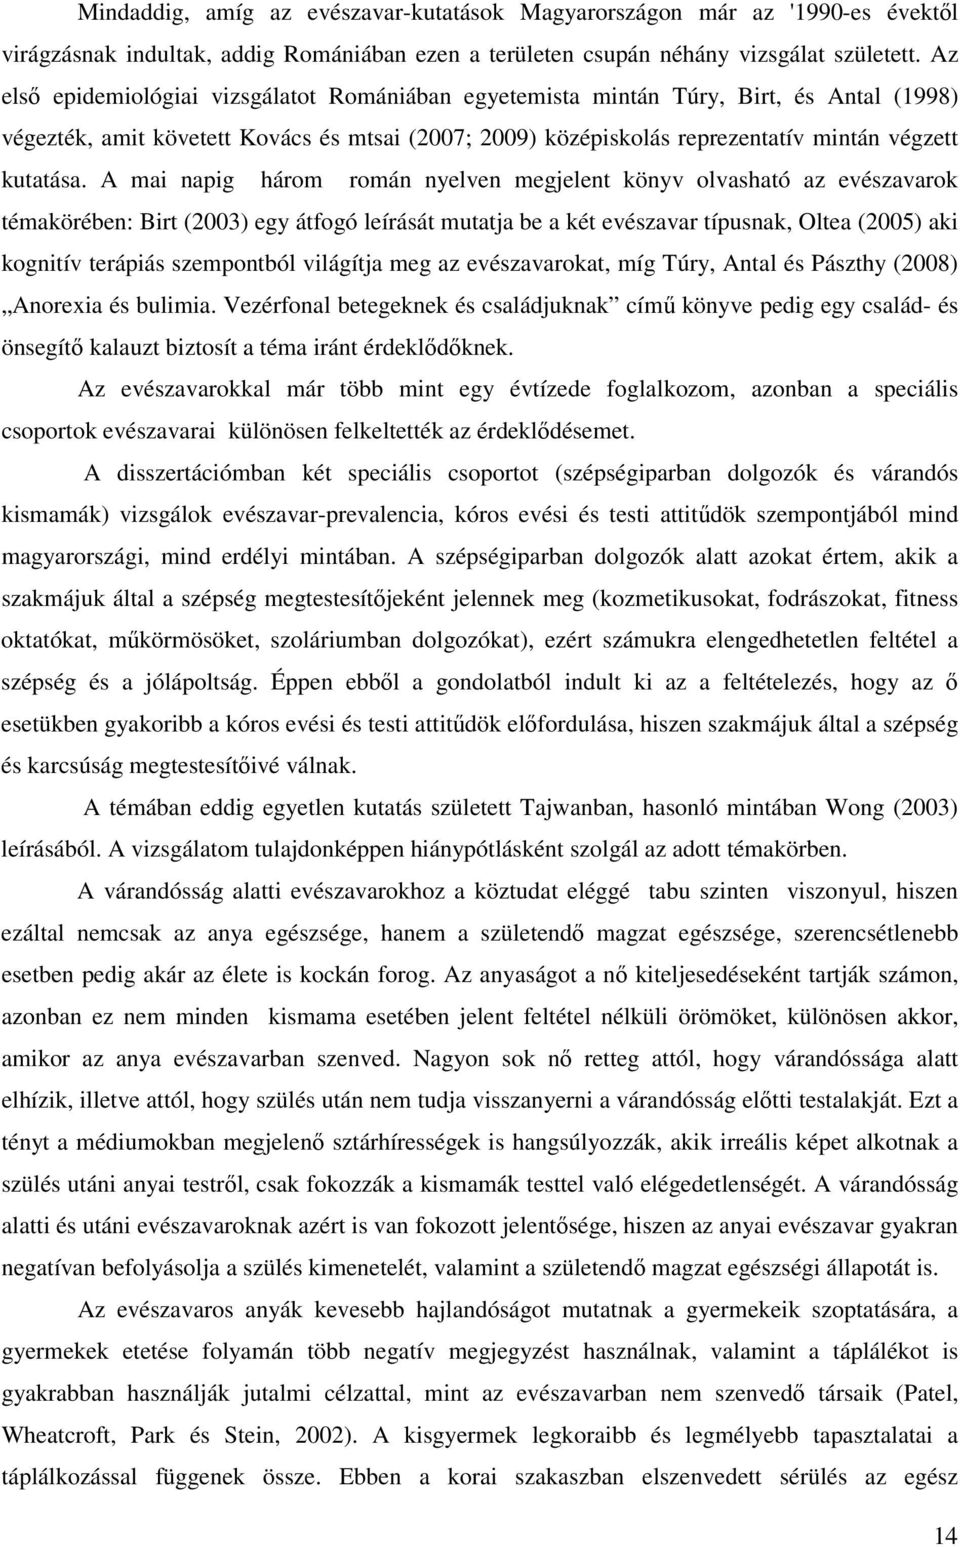 A mai napig három román nyelven megjelent könyv olvasható az evészavarok témakörében: Birt (2003) egy átfogó leírását mutatja be a két evészavar típusnak, Oltea (2005) aki kognitív terápiás